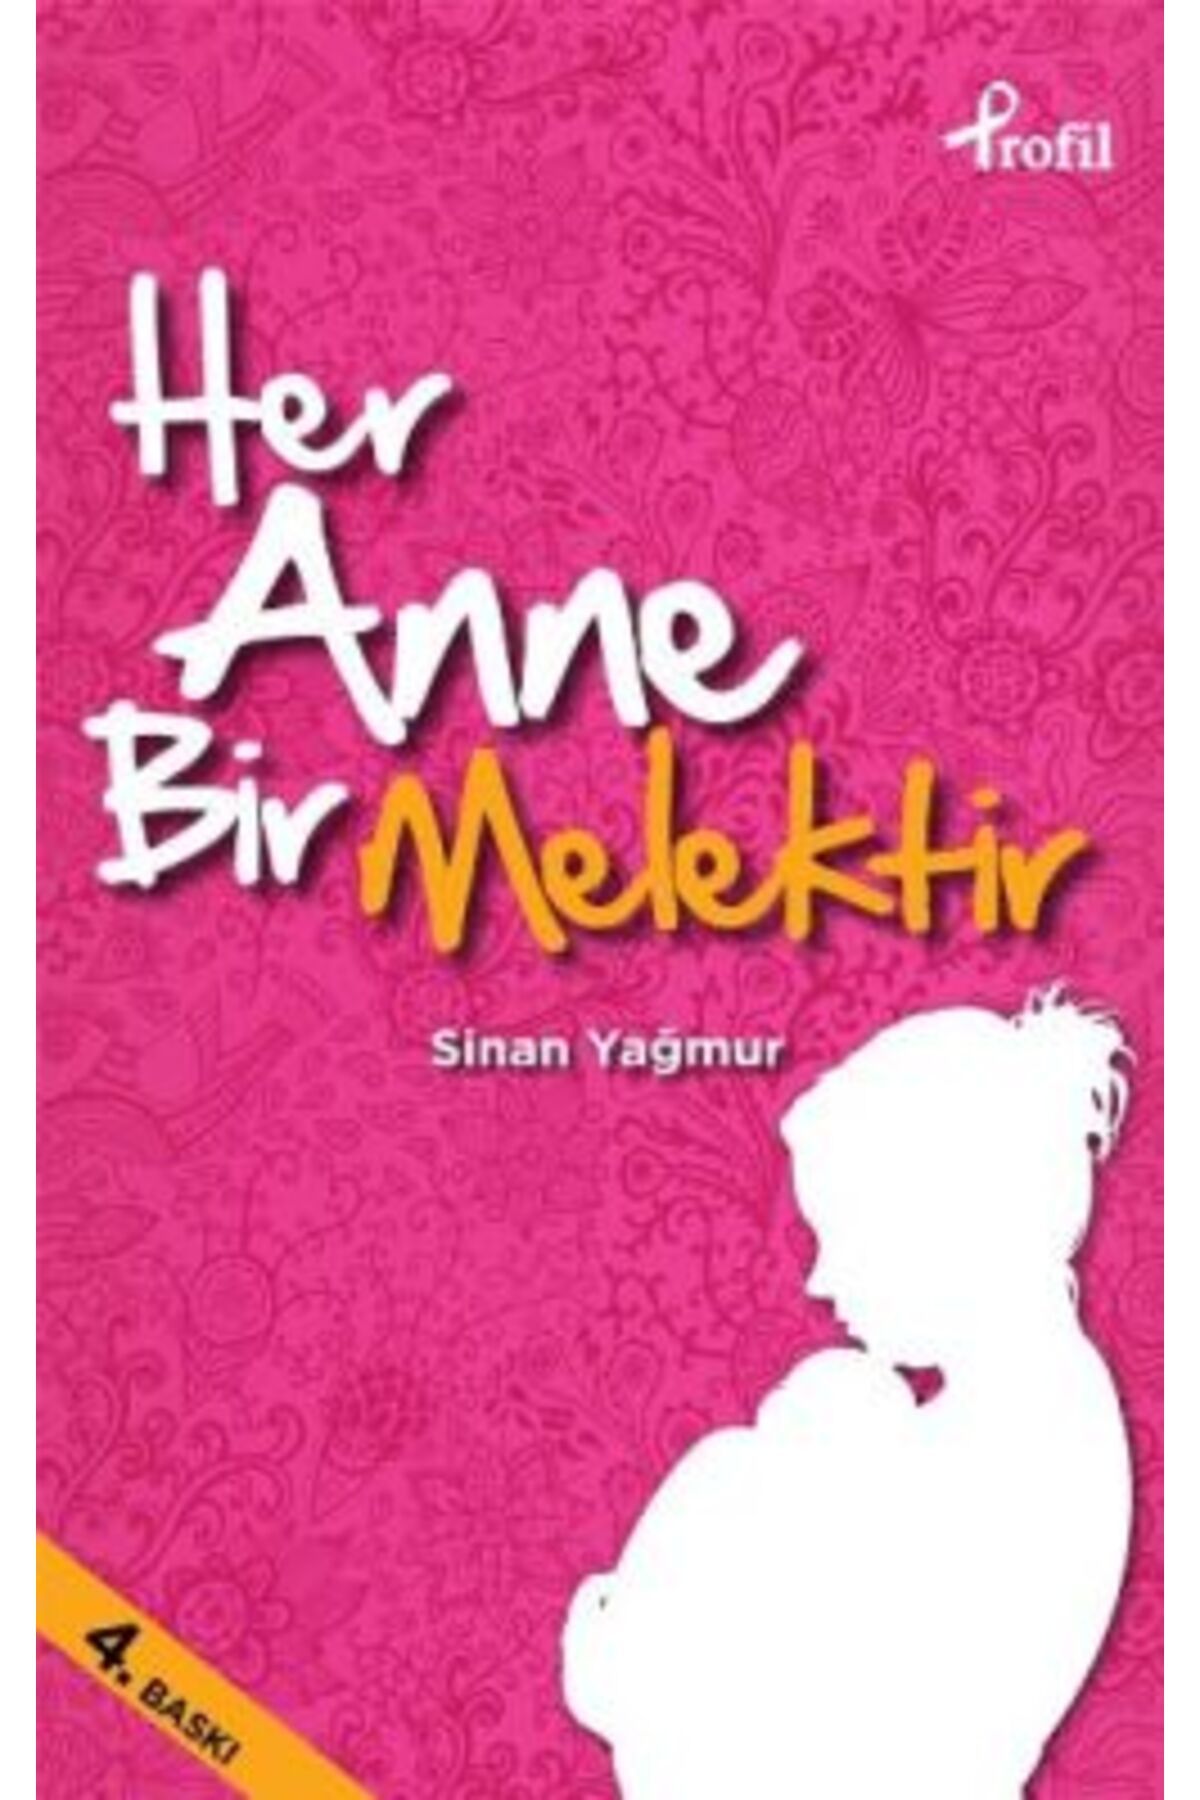 Profil Kitap Her Anne Bir Melektir kitabı - Sinan Yağmur - Profil Kitap